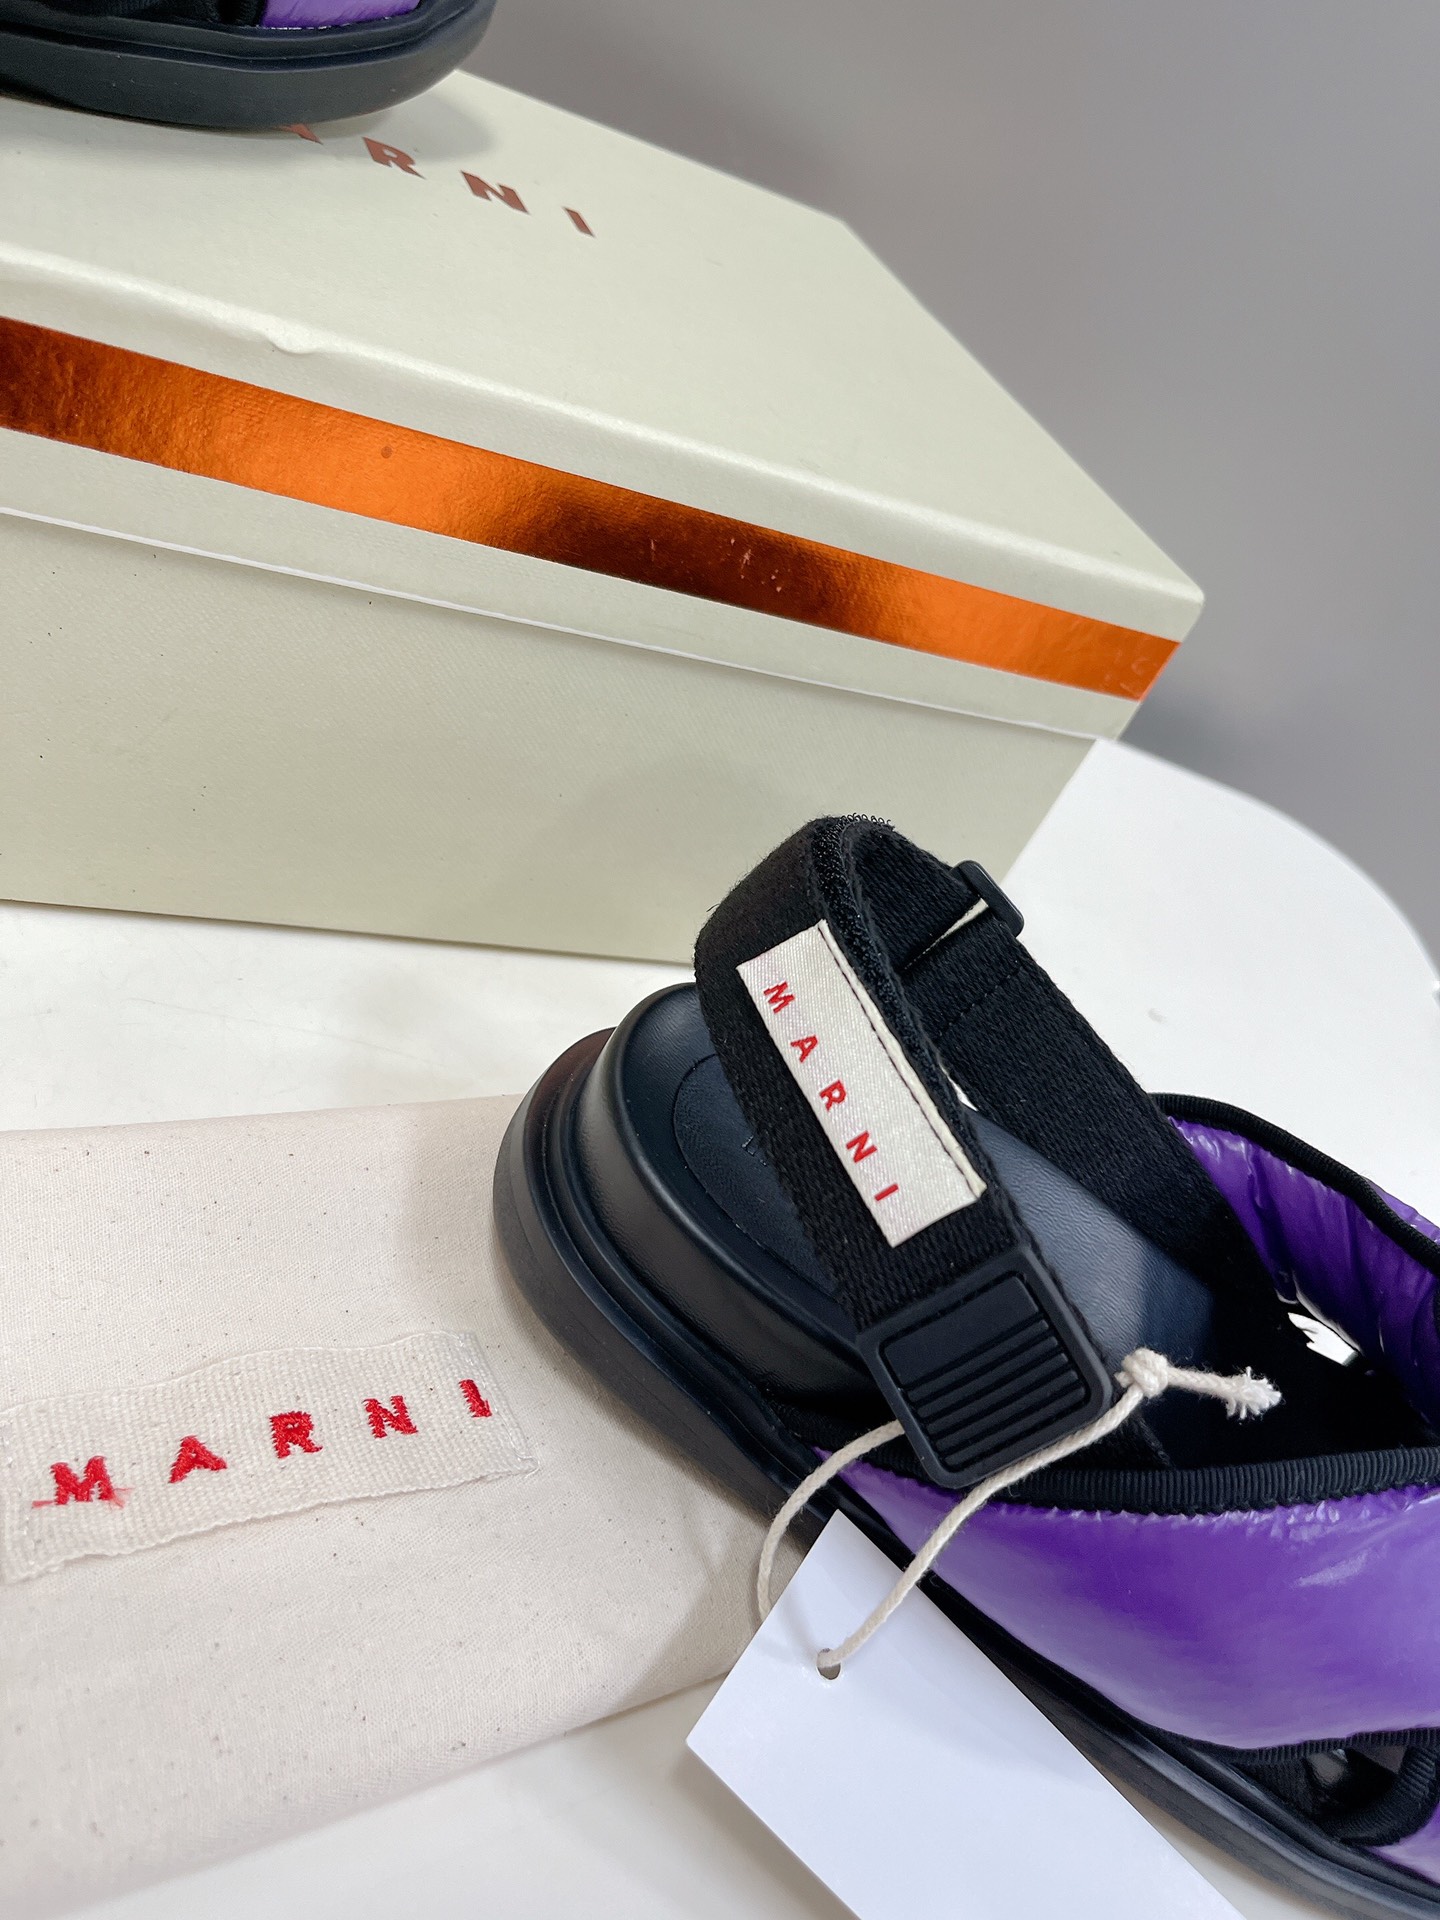 Marni玛尼经典拼色叉带凉鞋夏天就